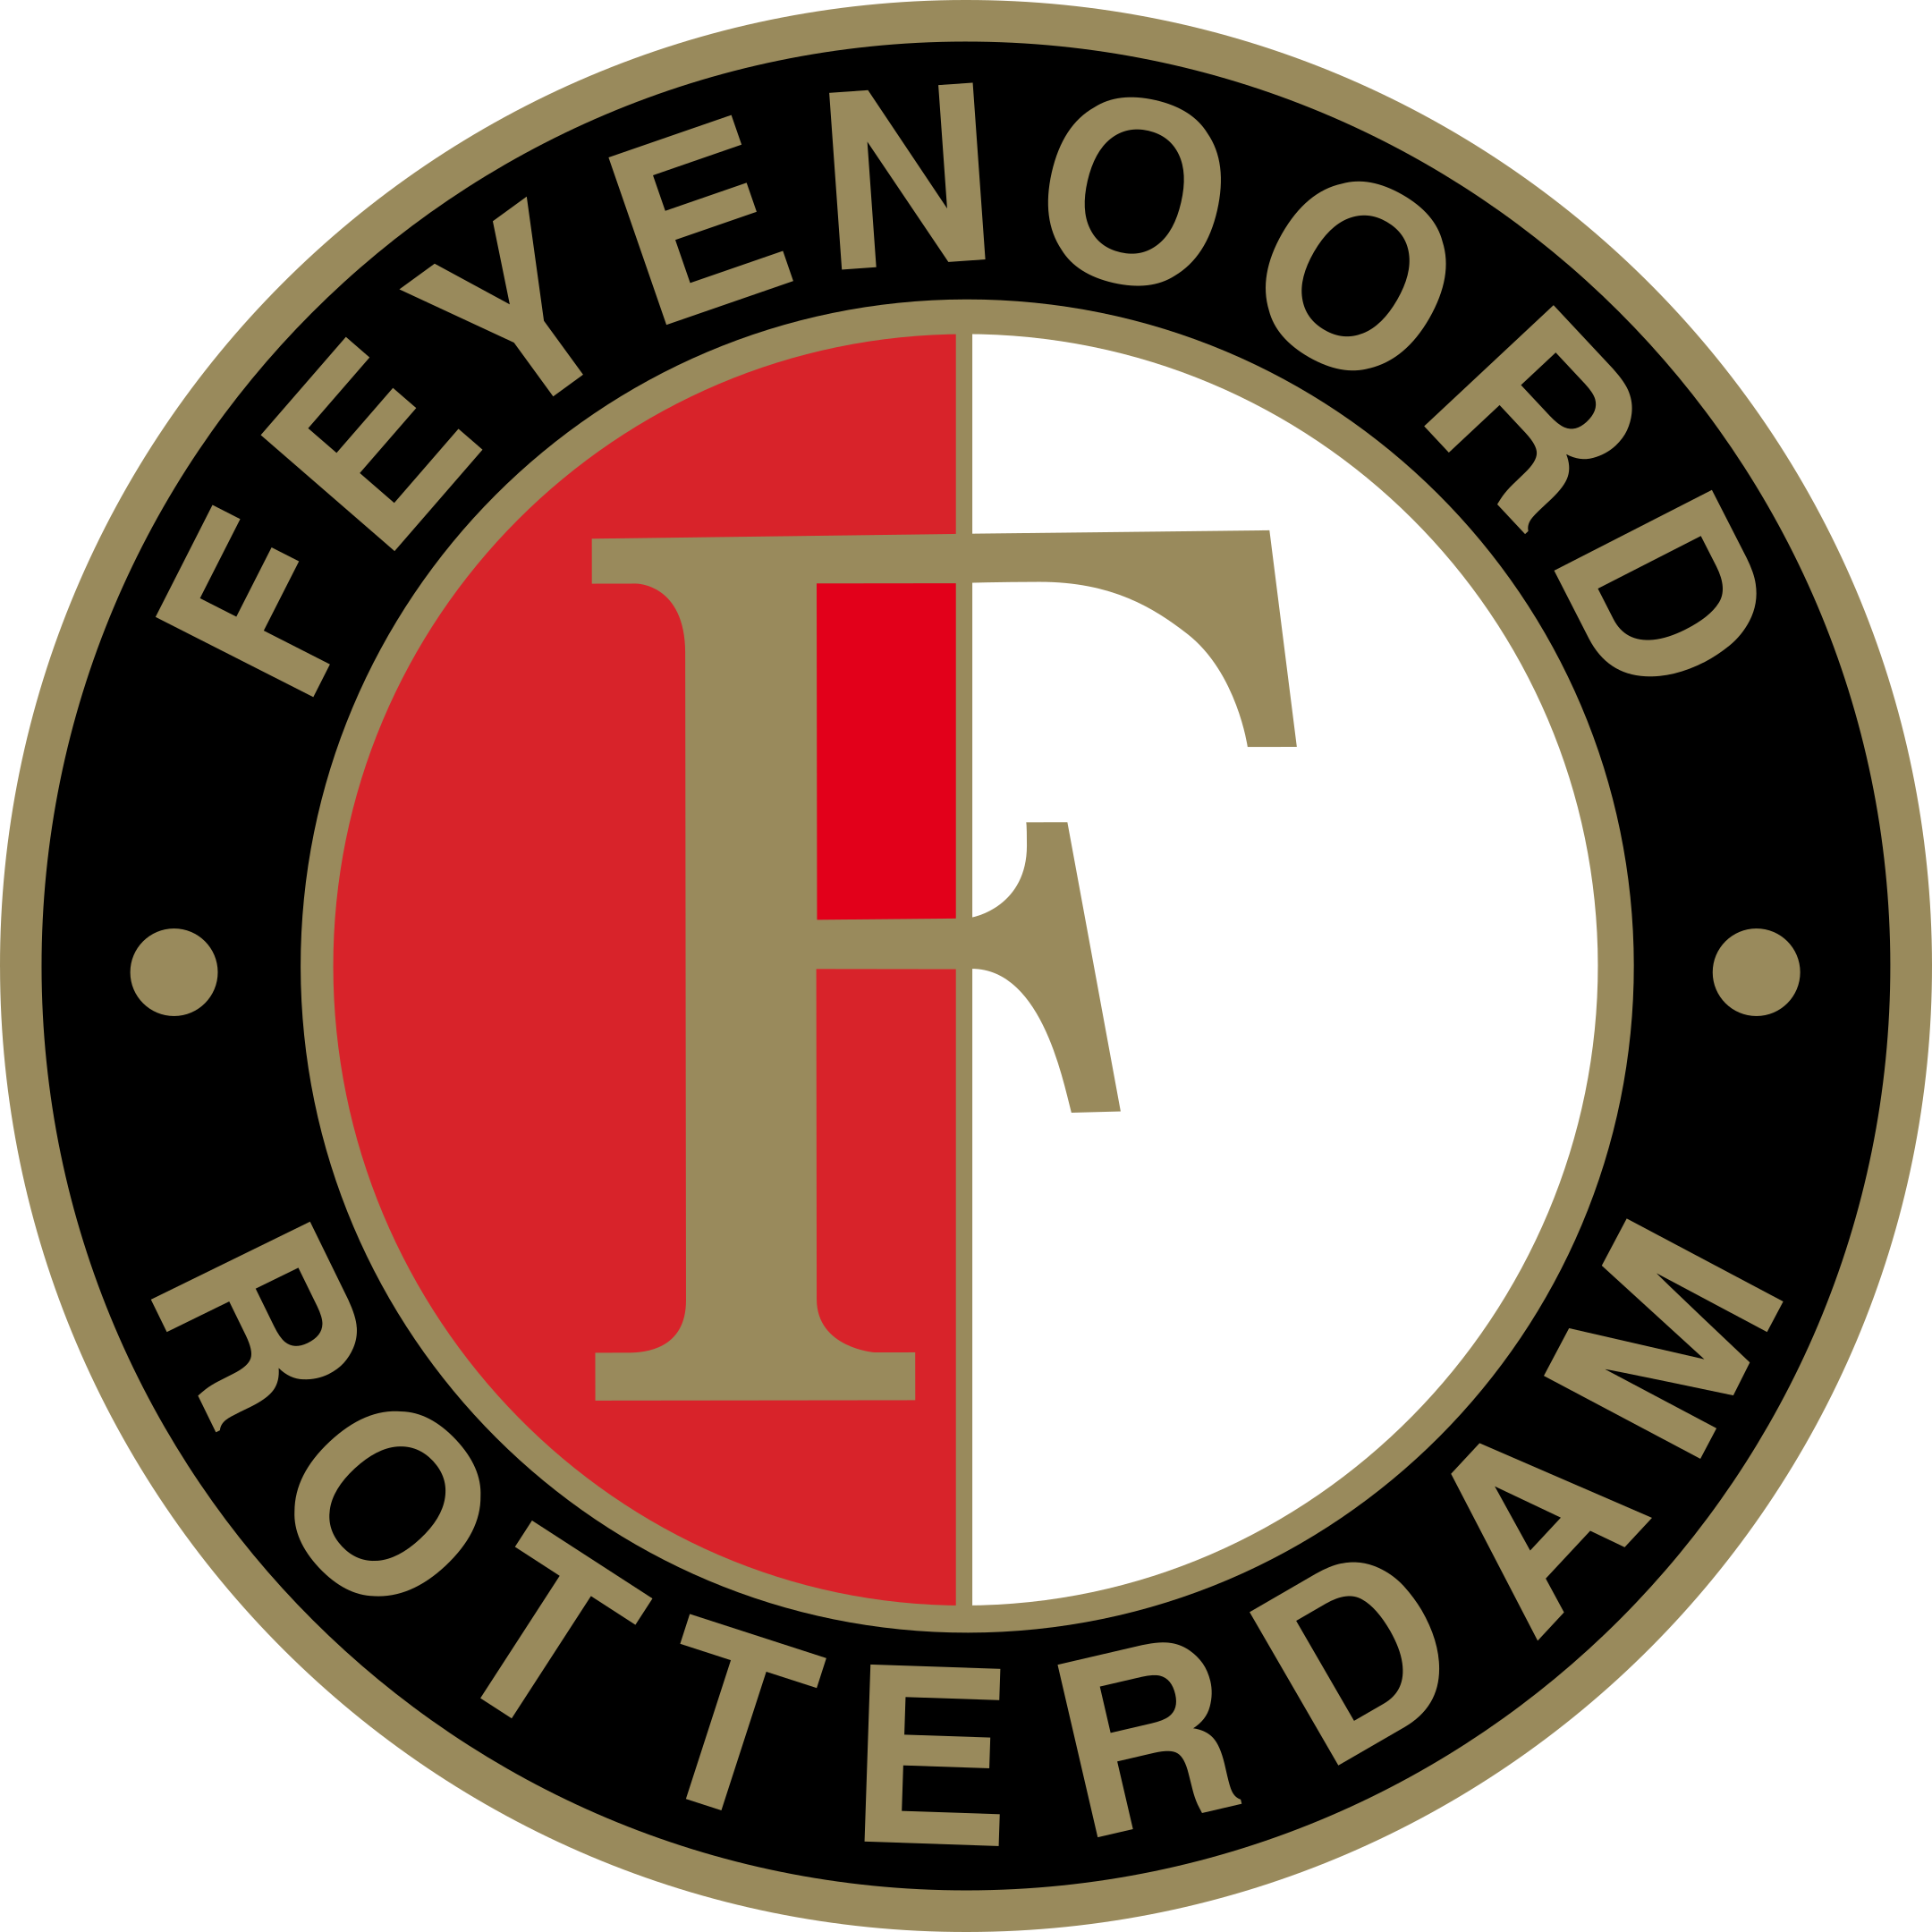 feyenoord logo 1 - Feyenoord Rotterdam Logo